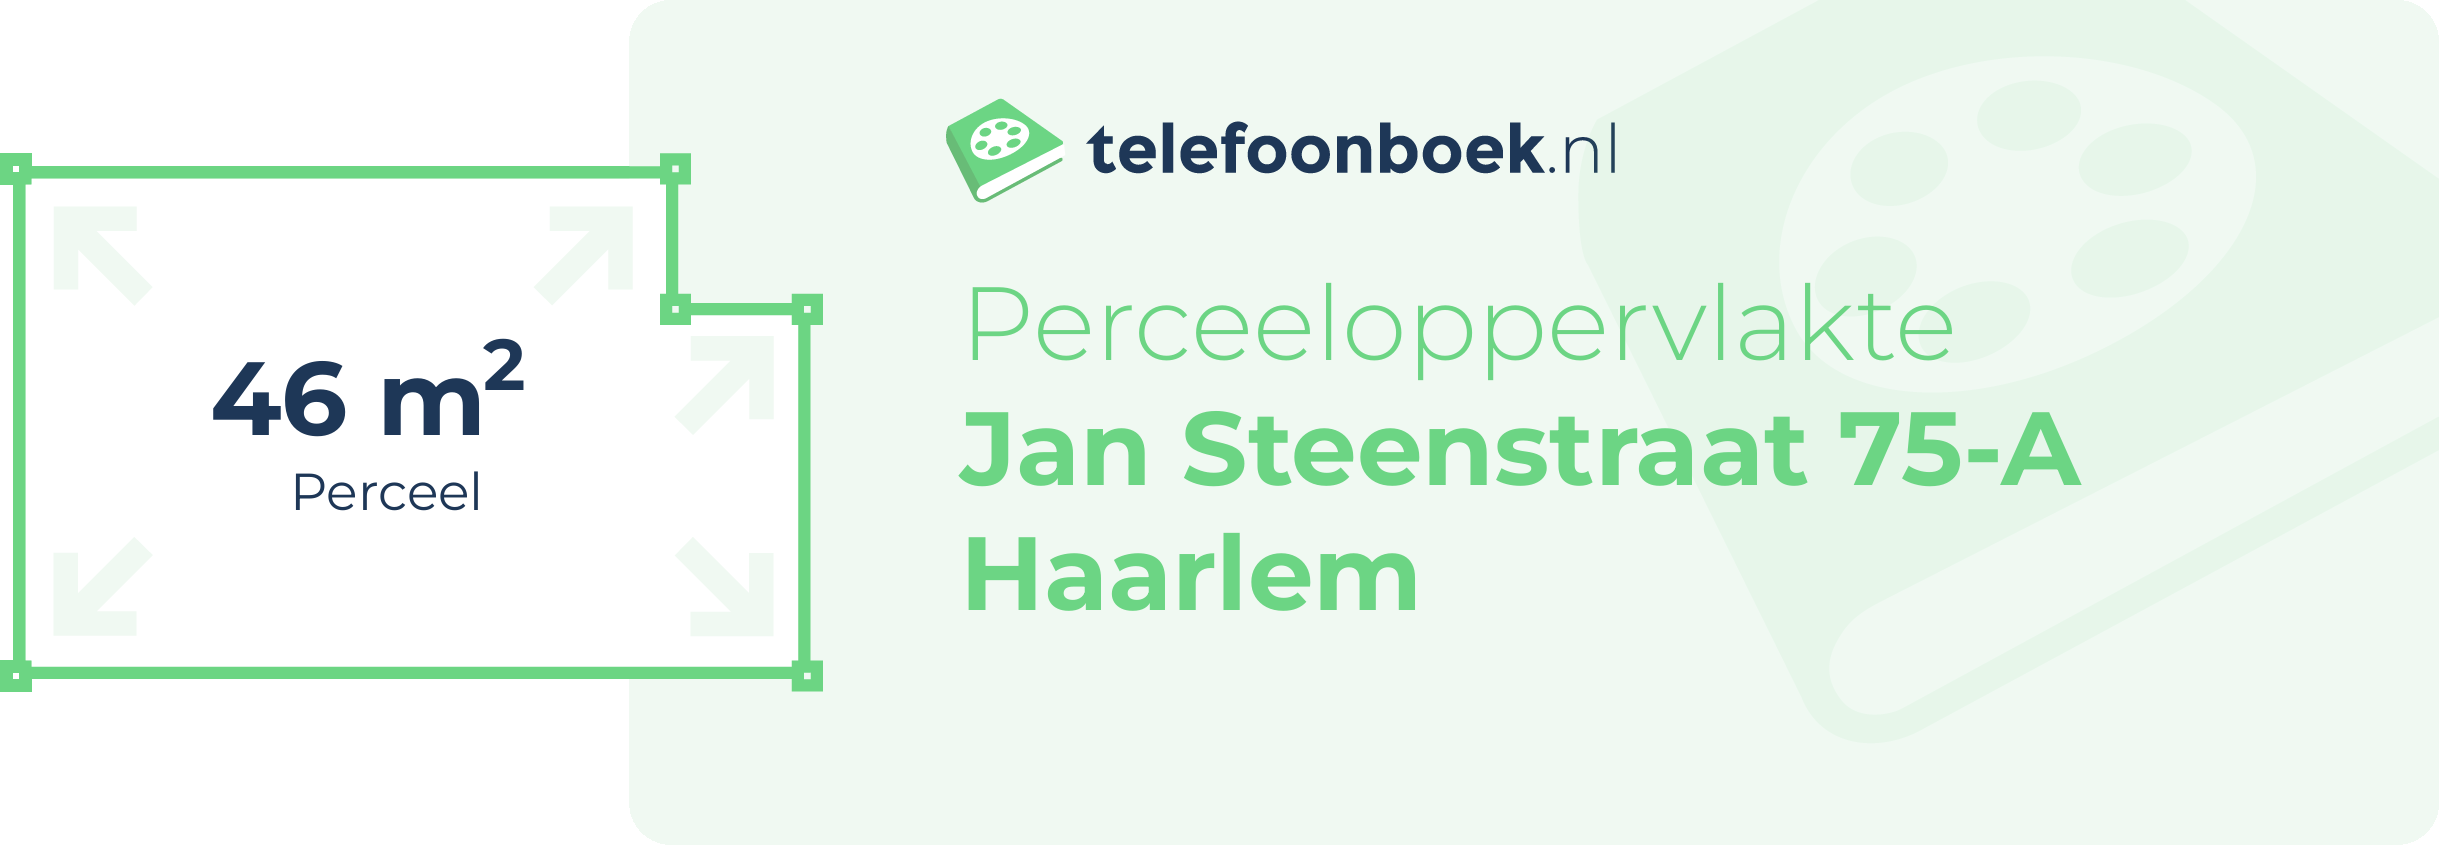 Perceeloppervlakte Jan Steenstraat 75-A Haarlem